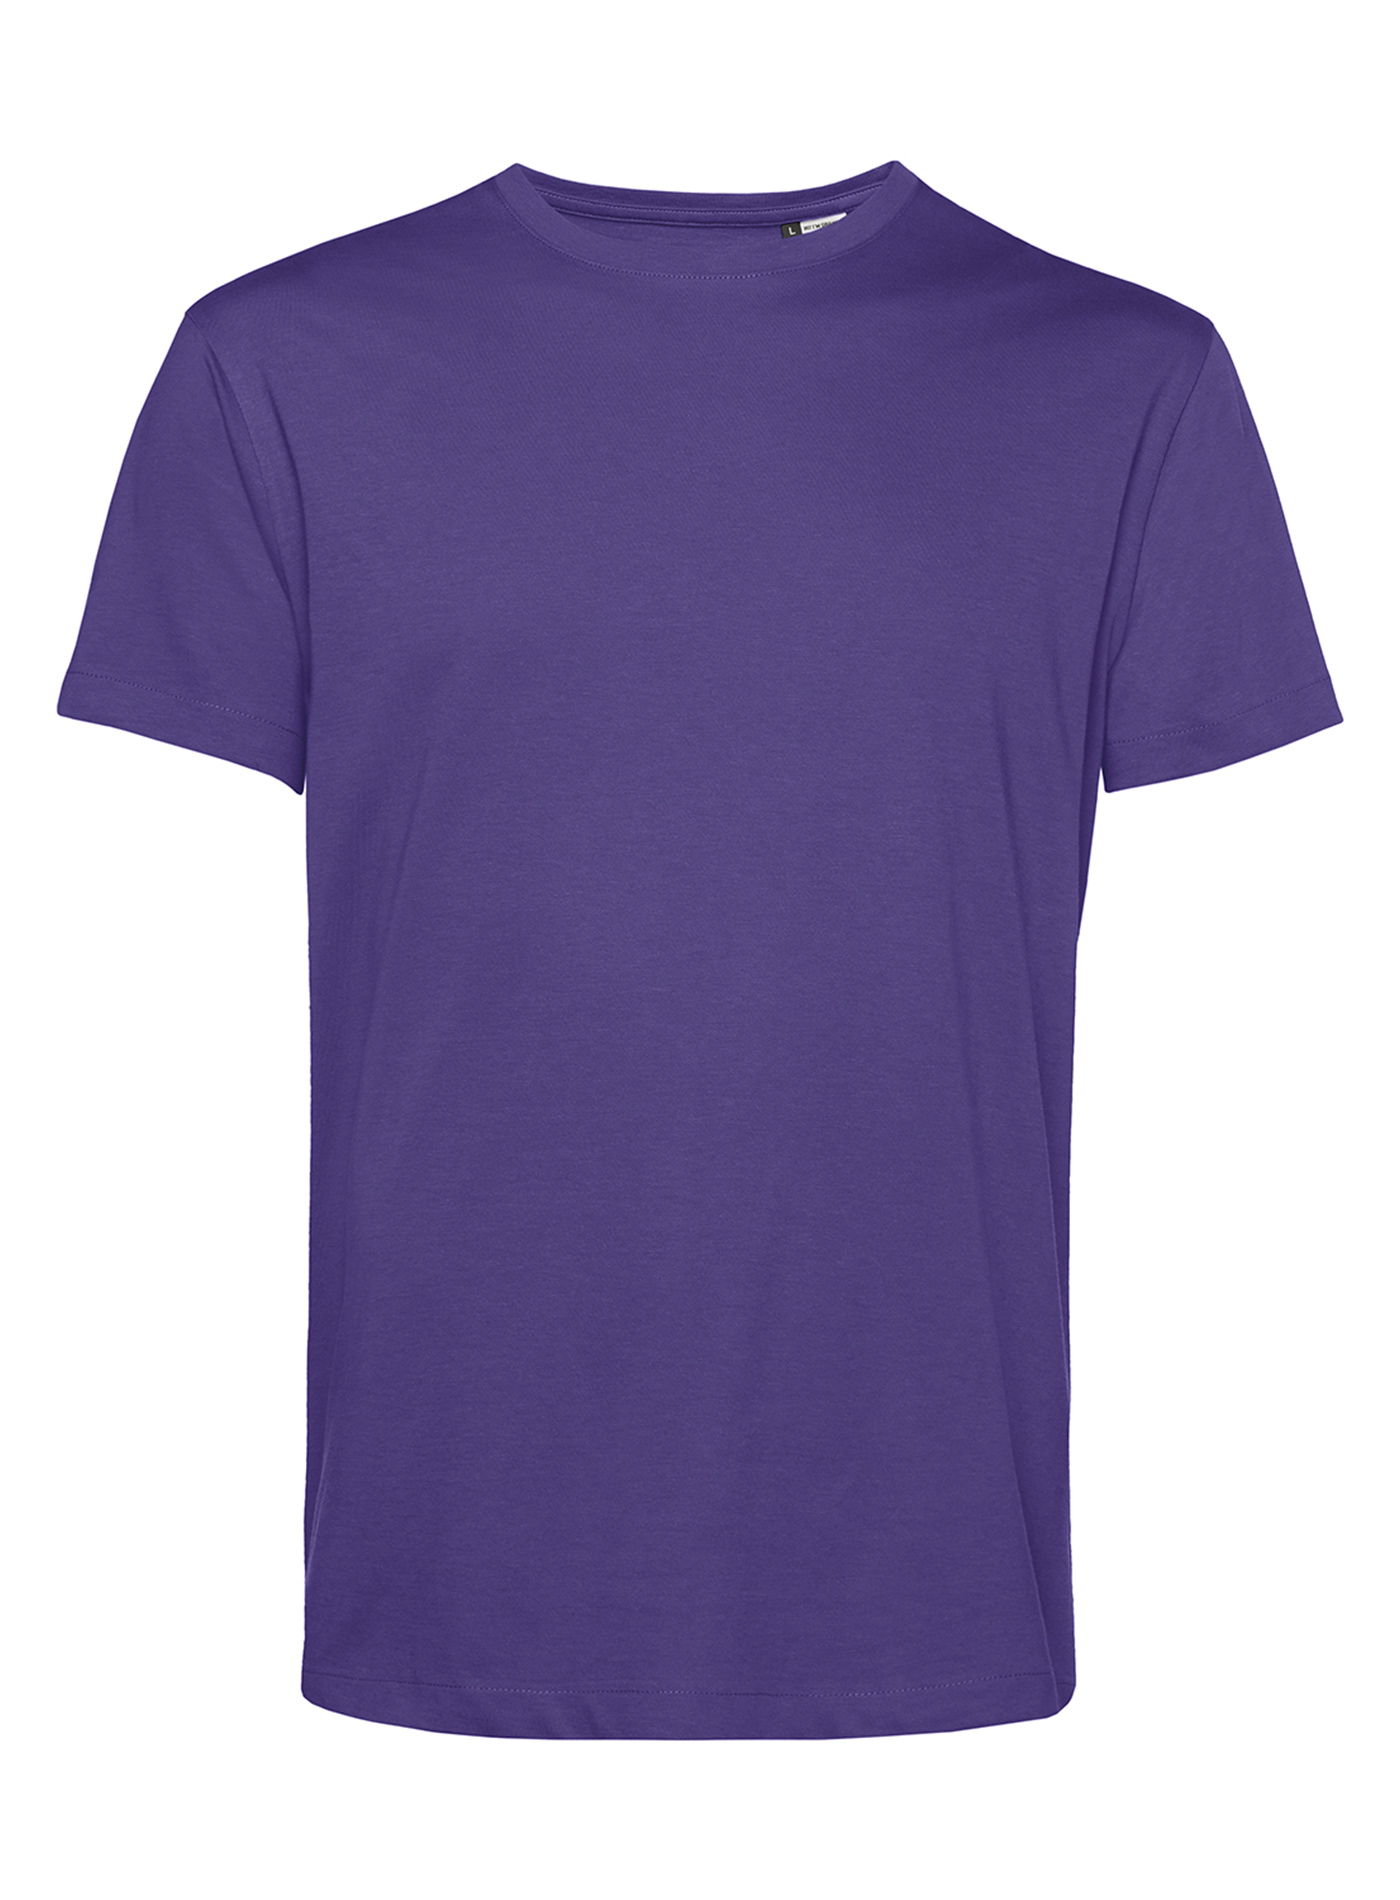 Pánské tričko B&C Collection Organic - Tmavě fialová M